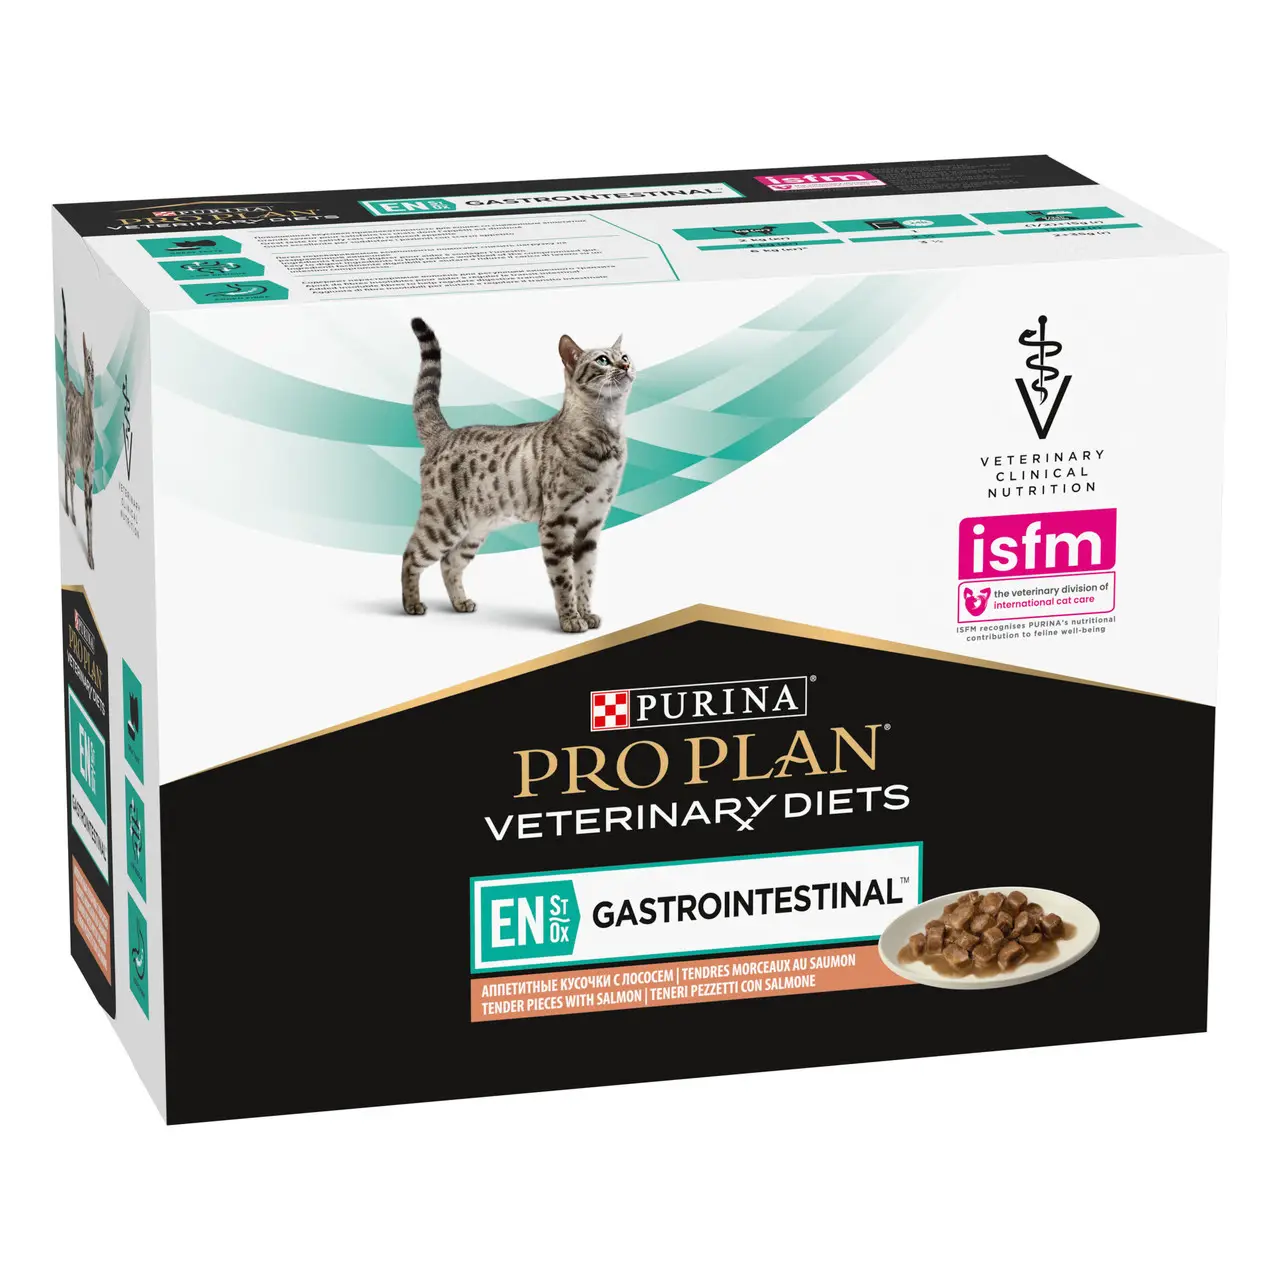 Purina Pro Plan Veterinary Diets EN лікувальний корм для котів c захворюваннями шлунково-кишкового тракту 85г * 10шт (лосось)1